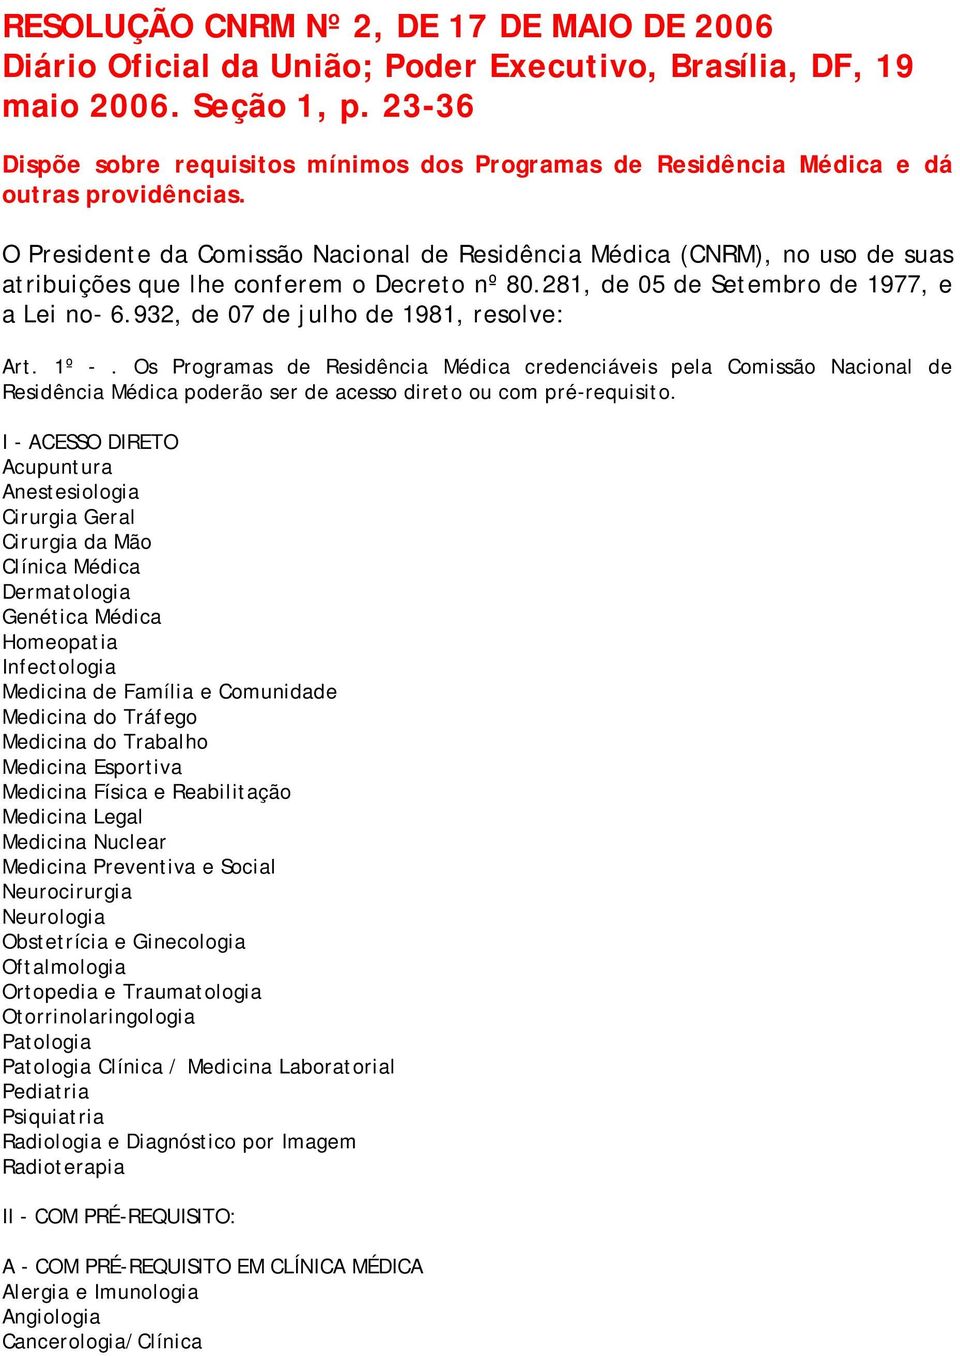 O Presidente da Comissão Nacional de Residência Médica (CNRM), no uso de suas atribuições que lhe conferem o Decreto nº 80.281, de 05 de Setembro de 1977, e a Lei no- 6.